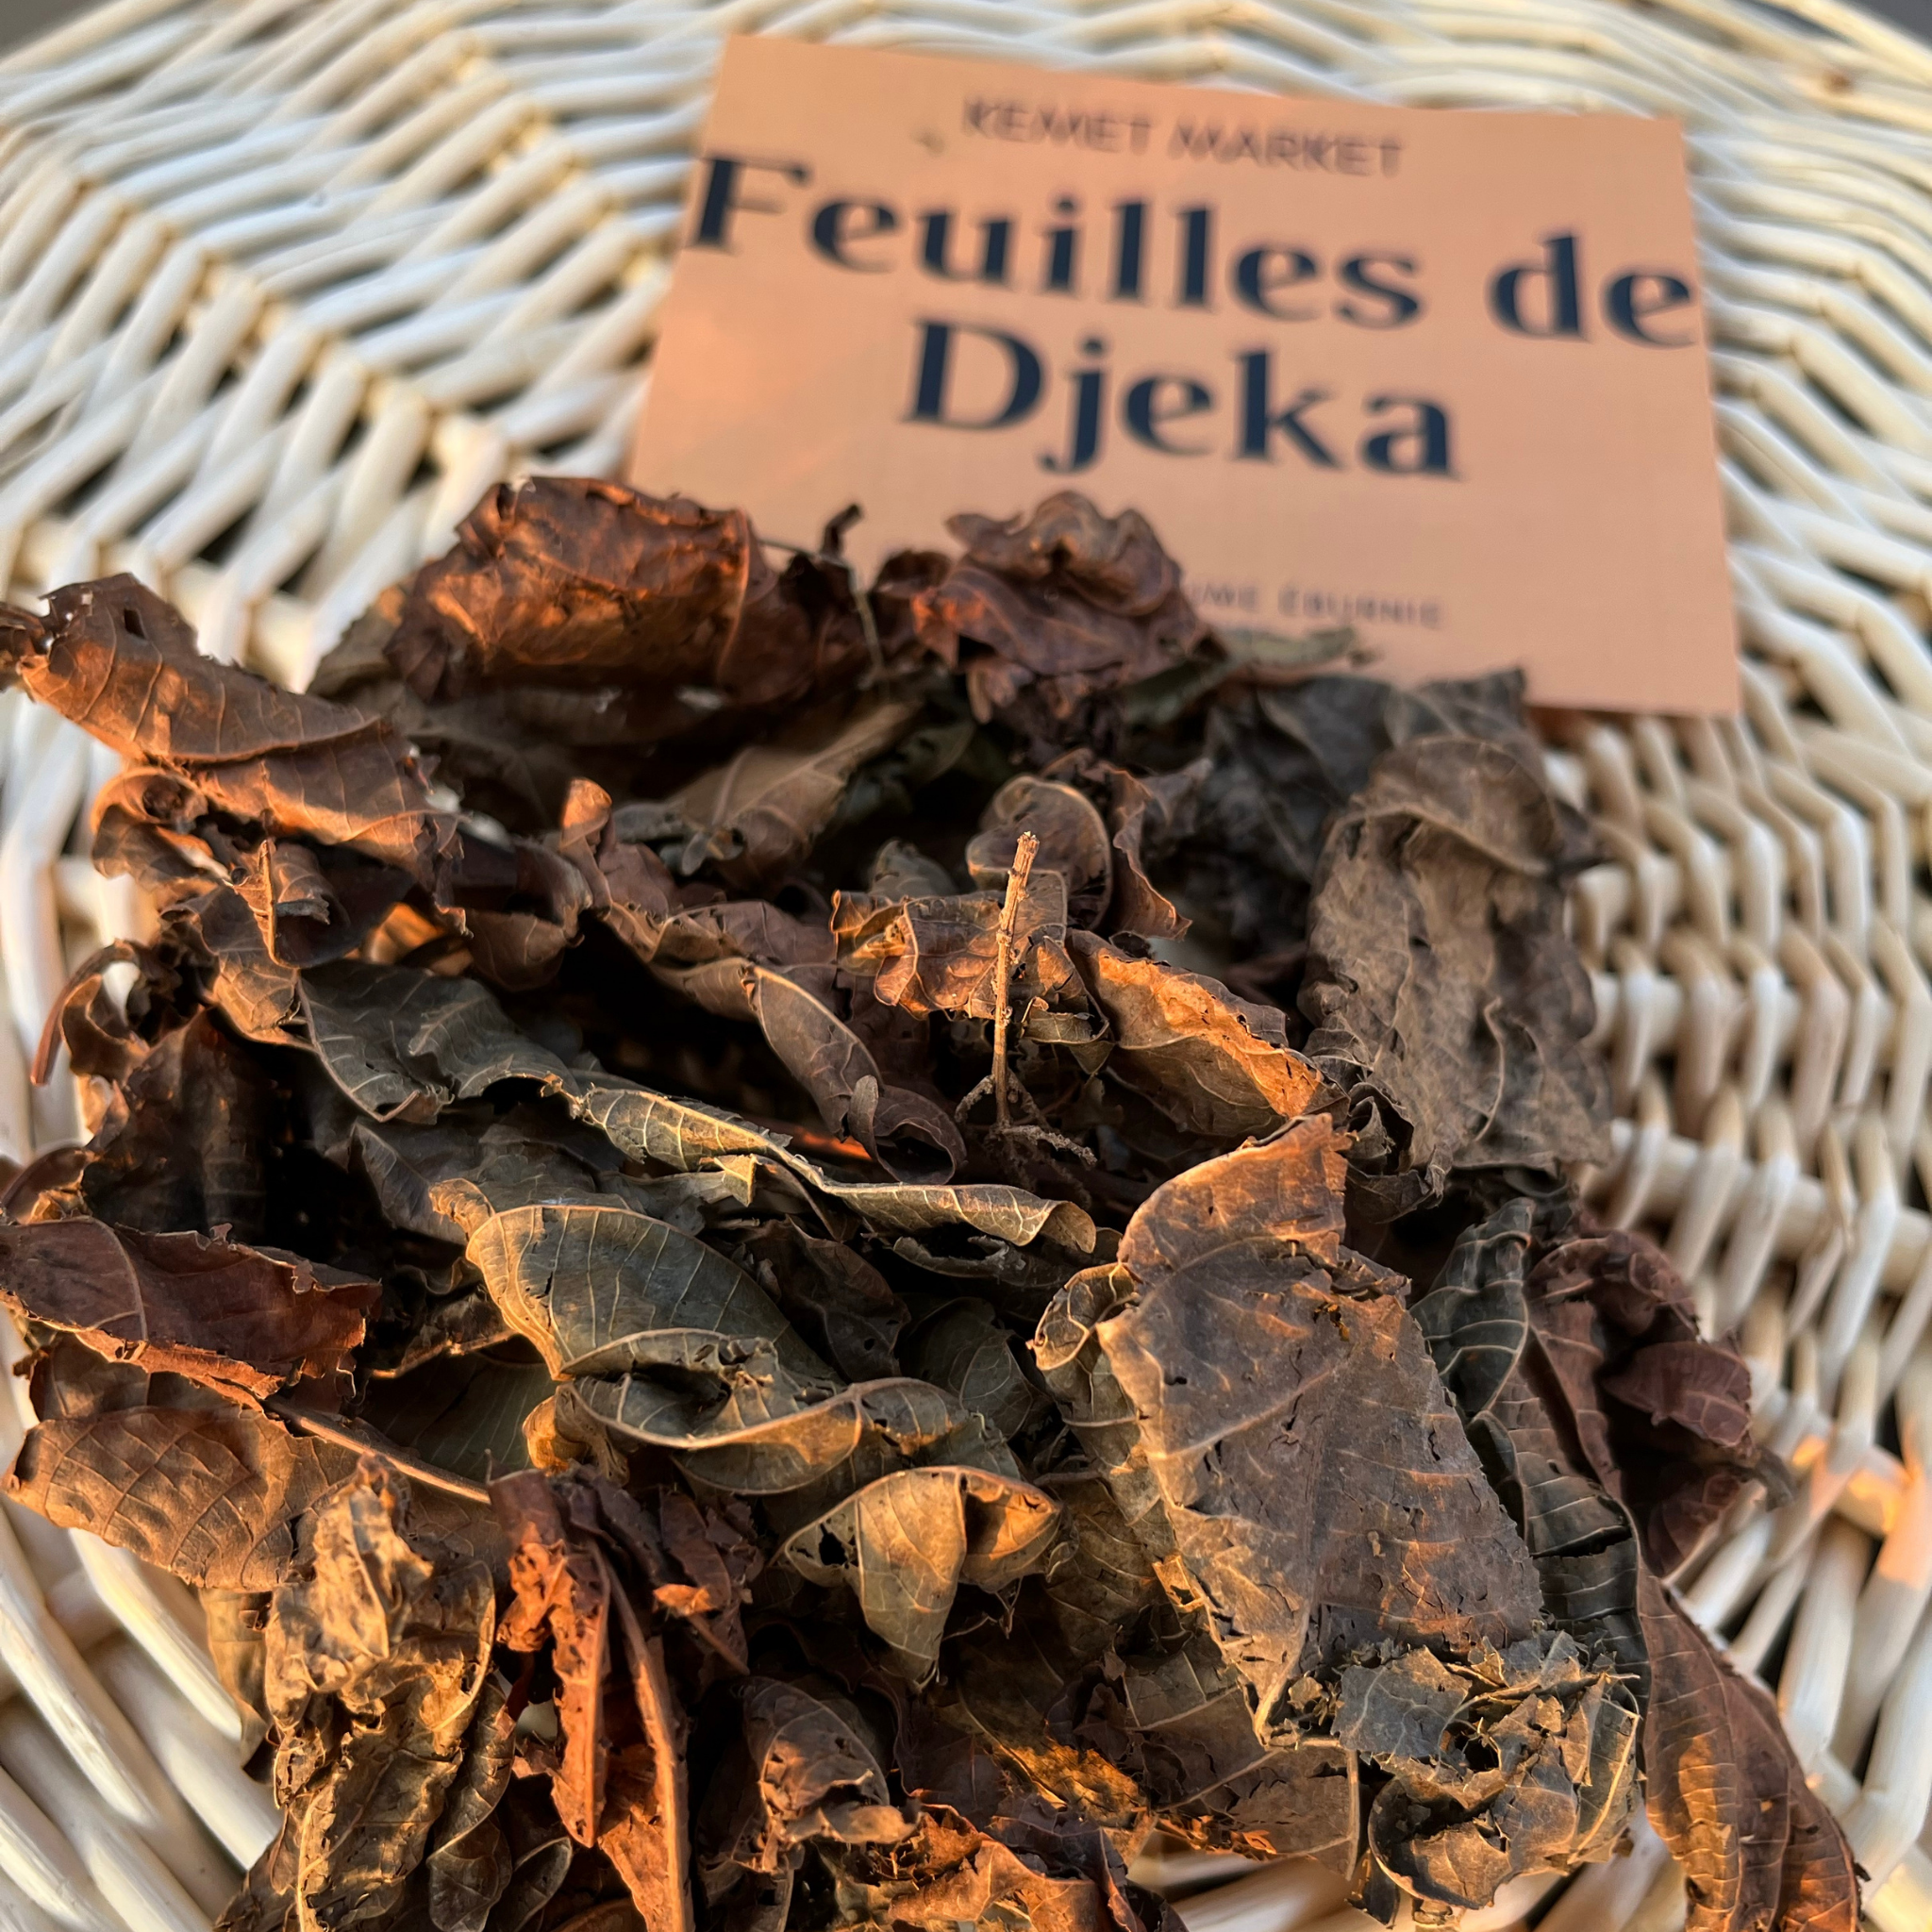 Les feuilles de djeka et les règles – Mélusine Paris